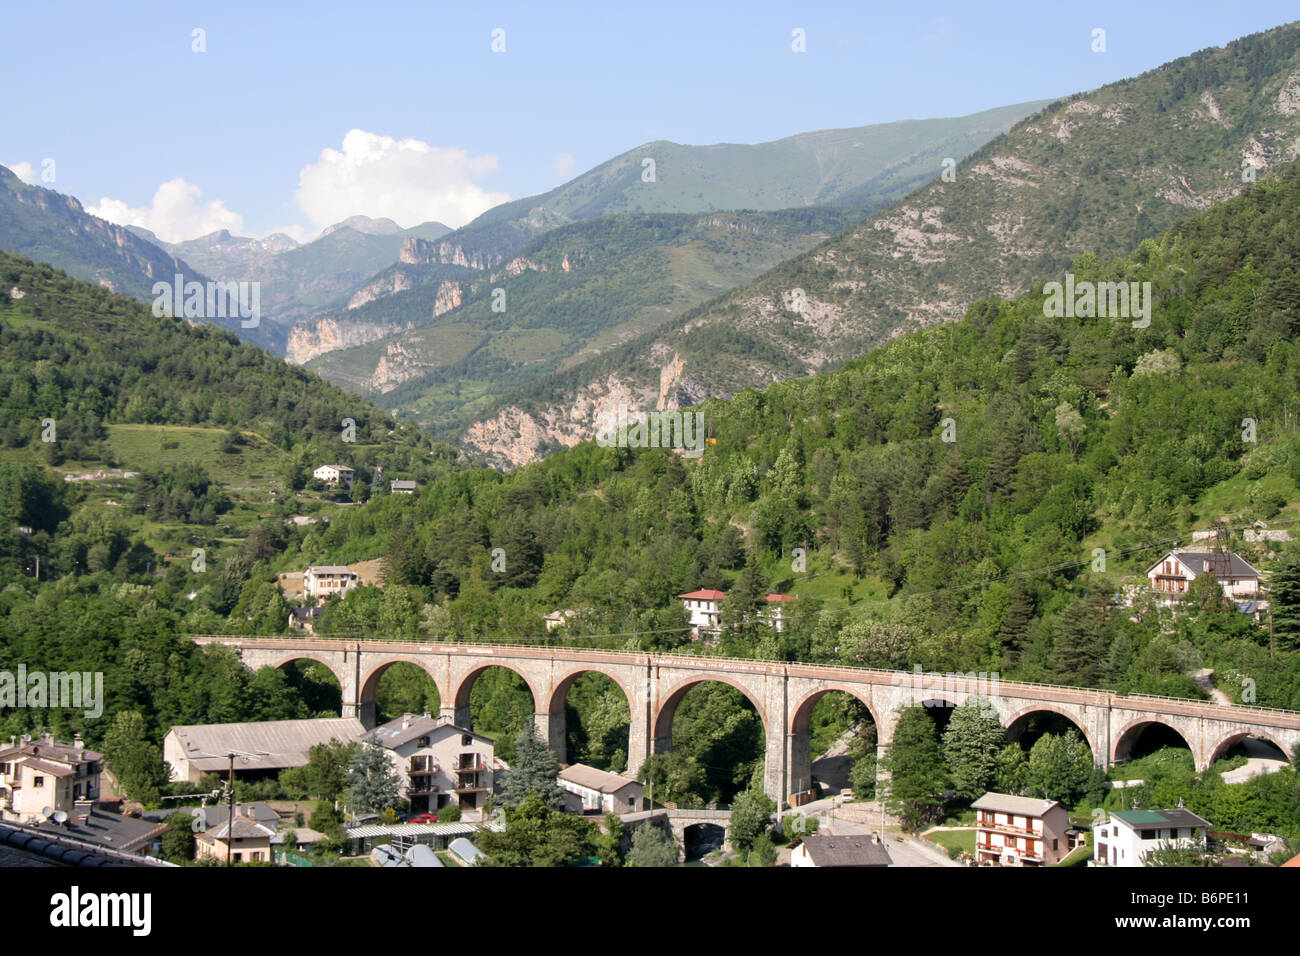 Erhöhten Bahnlinie am Tende Französisch Alpes Maritimes Stockfoto